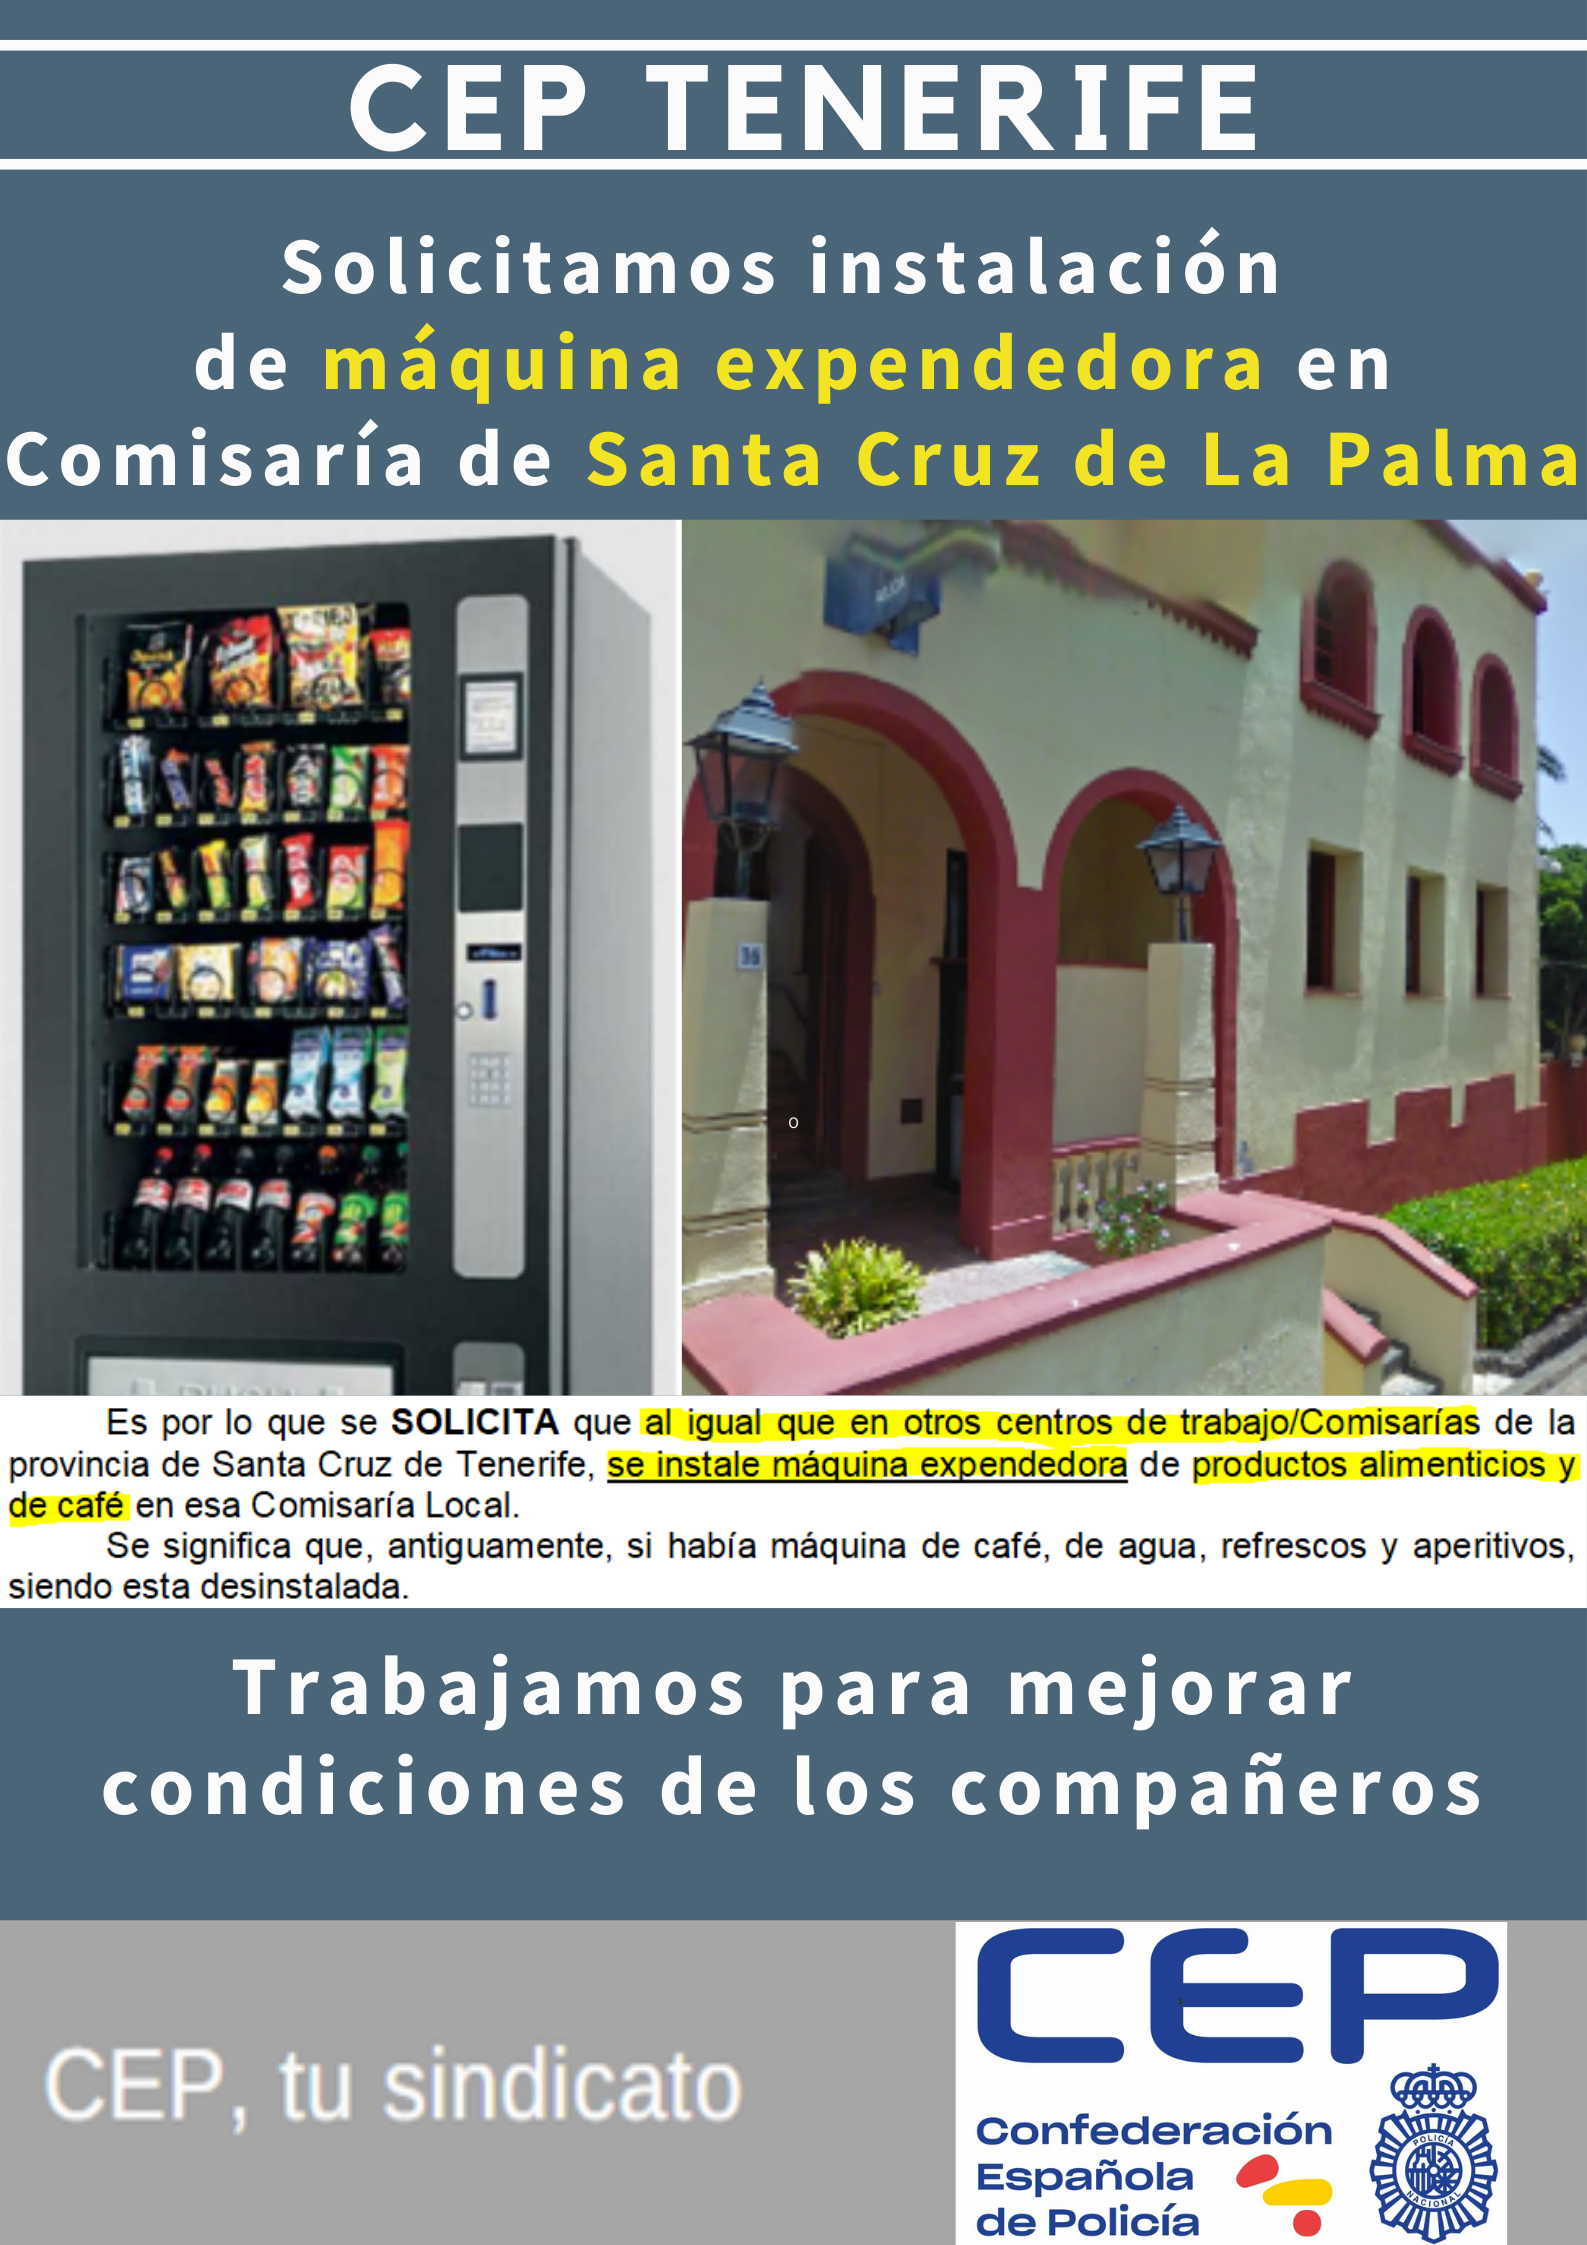 Solicitamos instalación máquina expendedora alimentos en La Palma